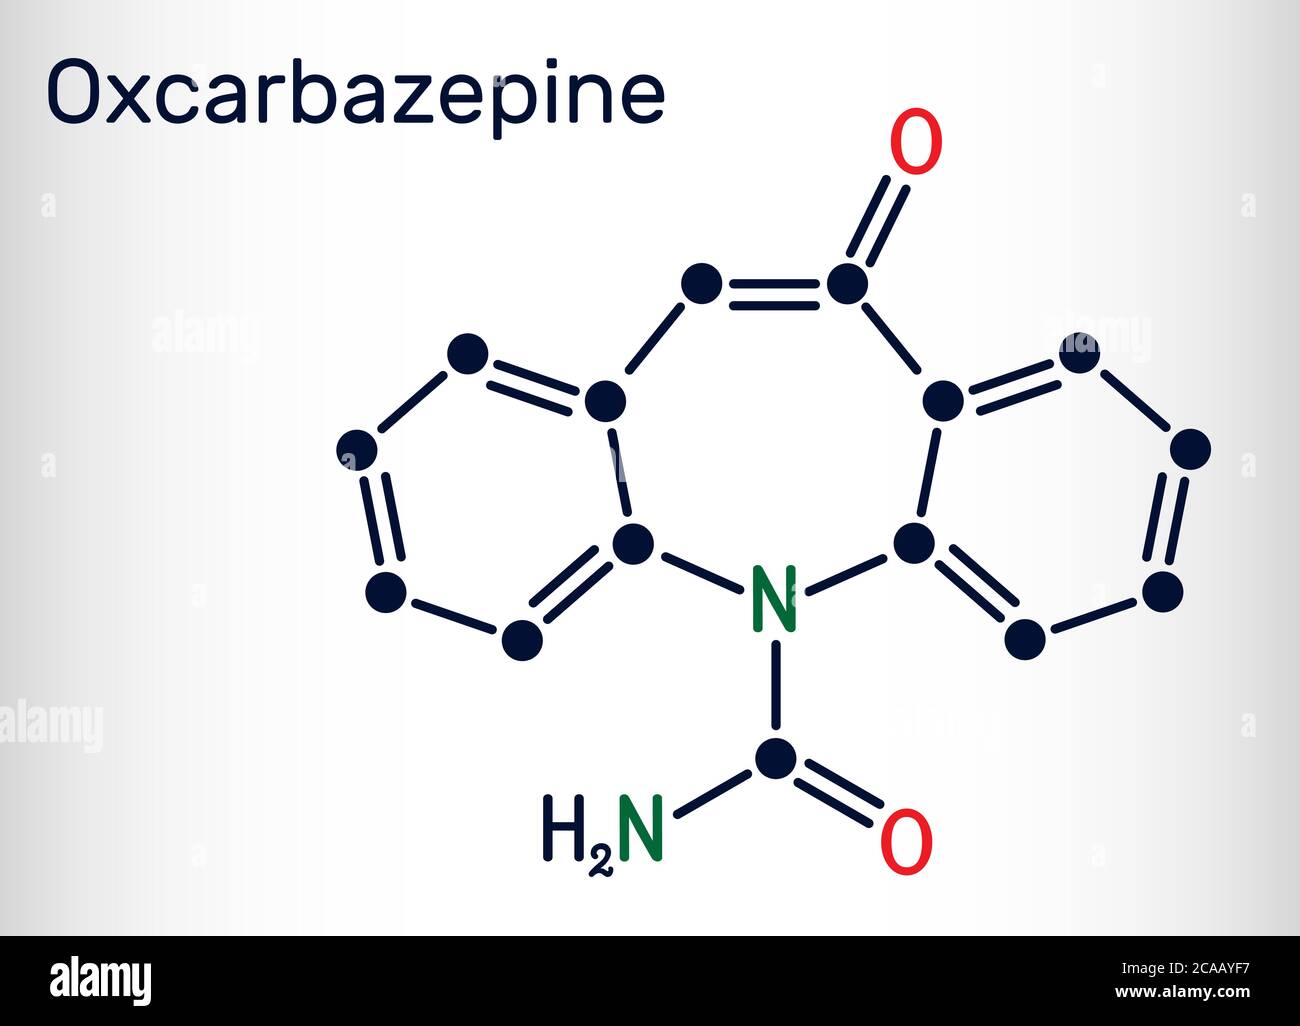 Oxcarbazepine, molécule C15H12N2O2. Il est antiépileptique, anticonvulsant médicament utilisé dans le traitement des crises, l'épilepsie, le trouble bipolaire. Chimie squelettique Illustration de Vecteur